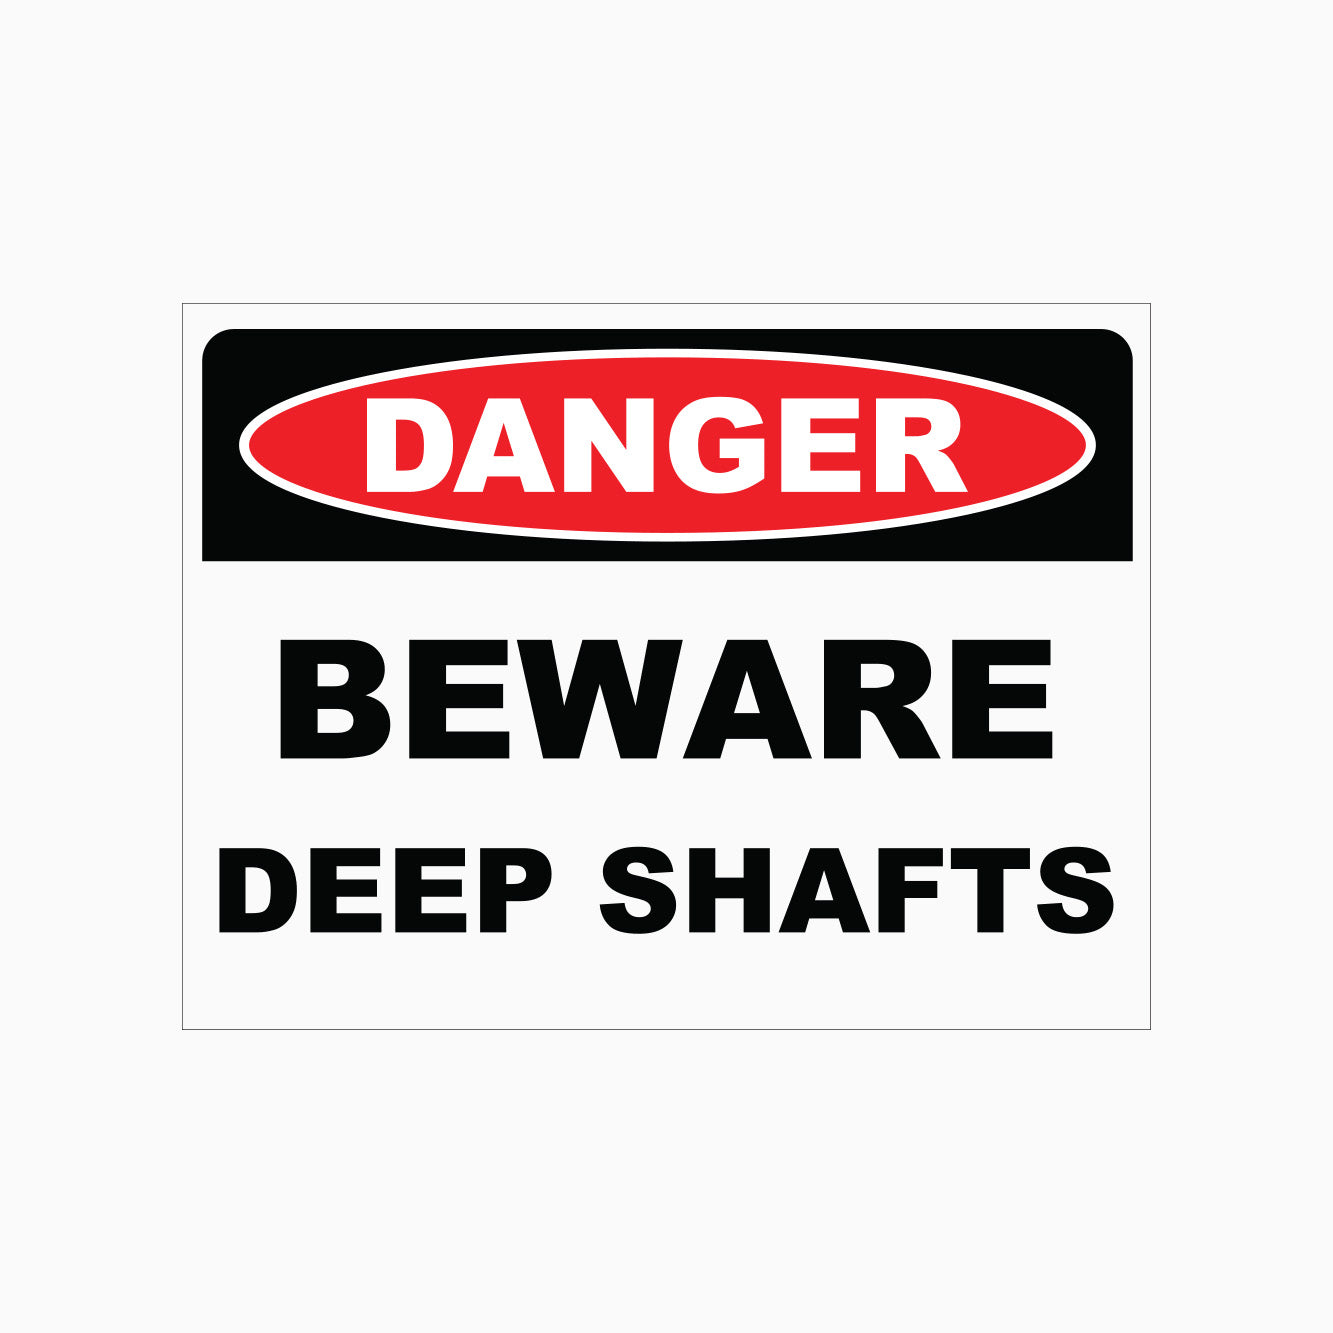 BEWARE DEEP SHAFTS SIGN - DANGER SIGN